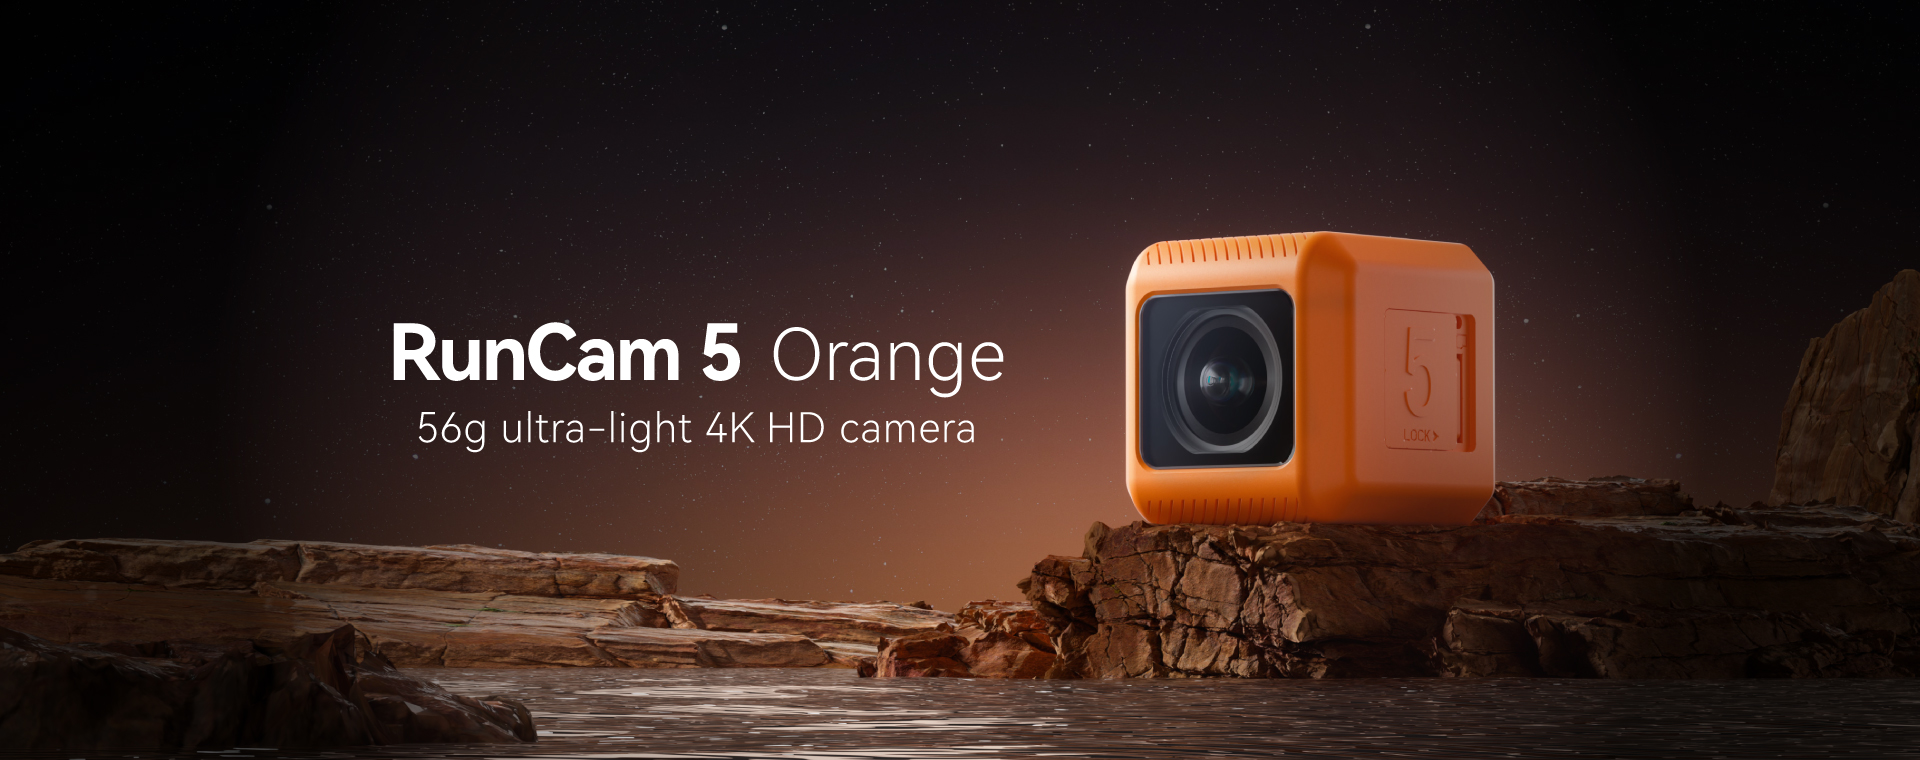 RunCam 5 Orange